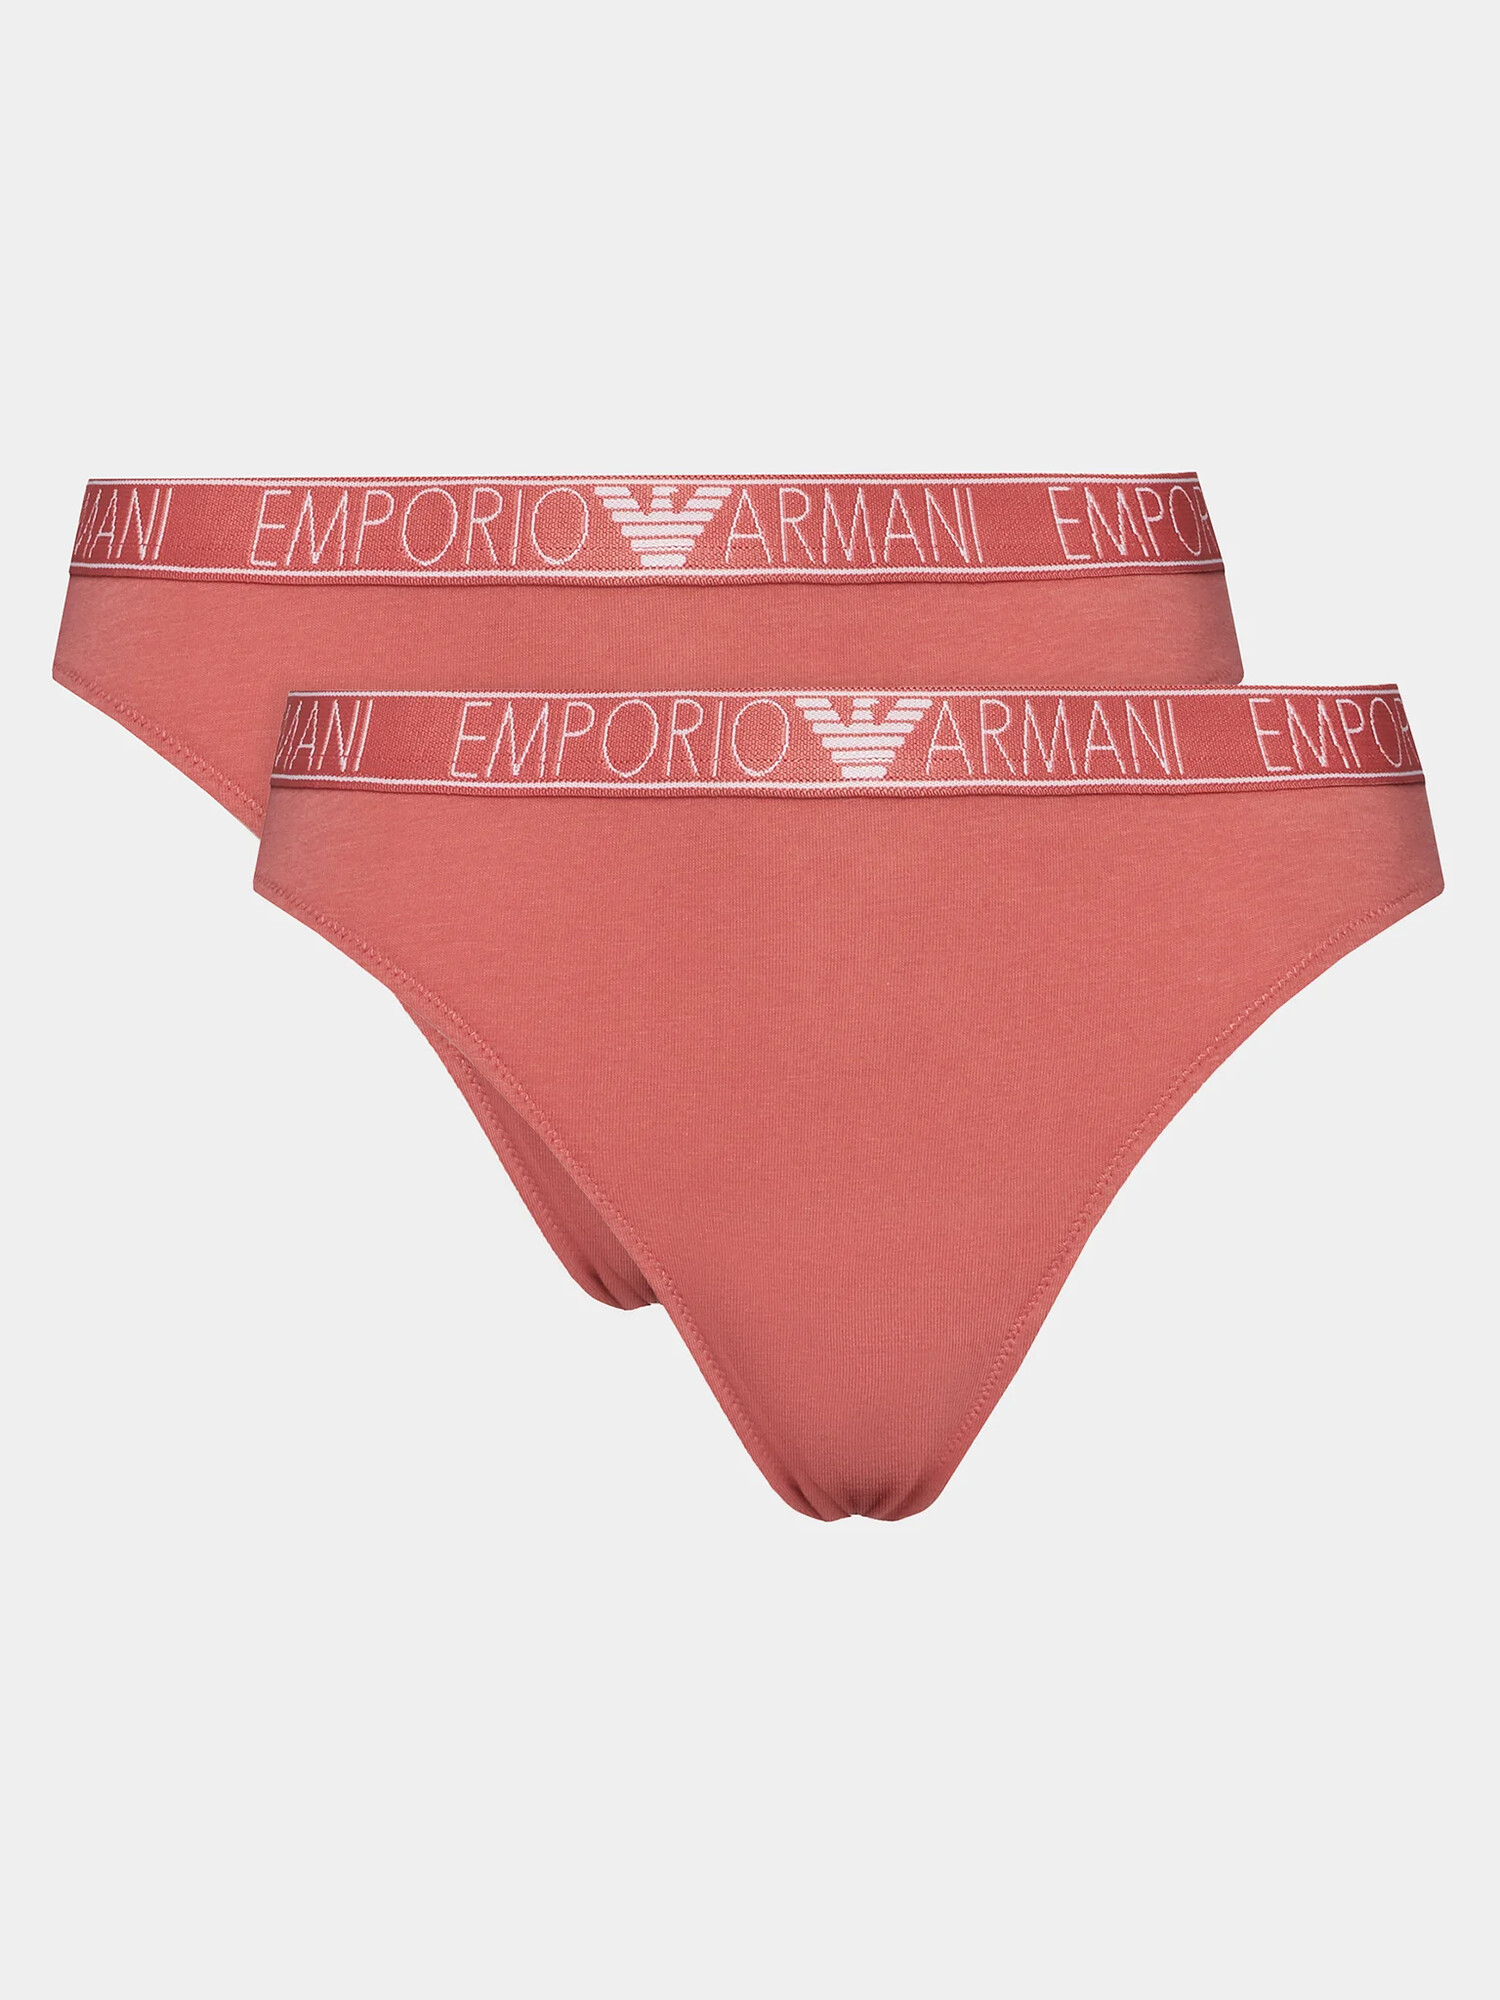 Dámské kalhotky 2Pack 164752 4R223 05373 korálové - Emporio Armani M